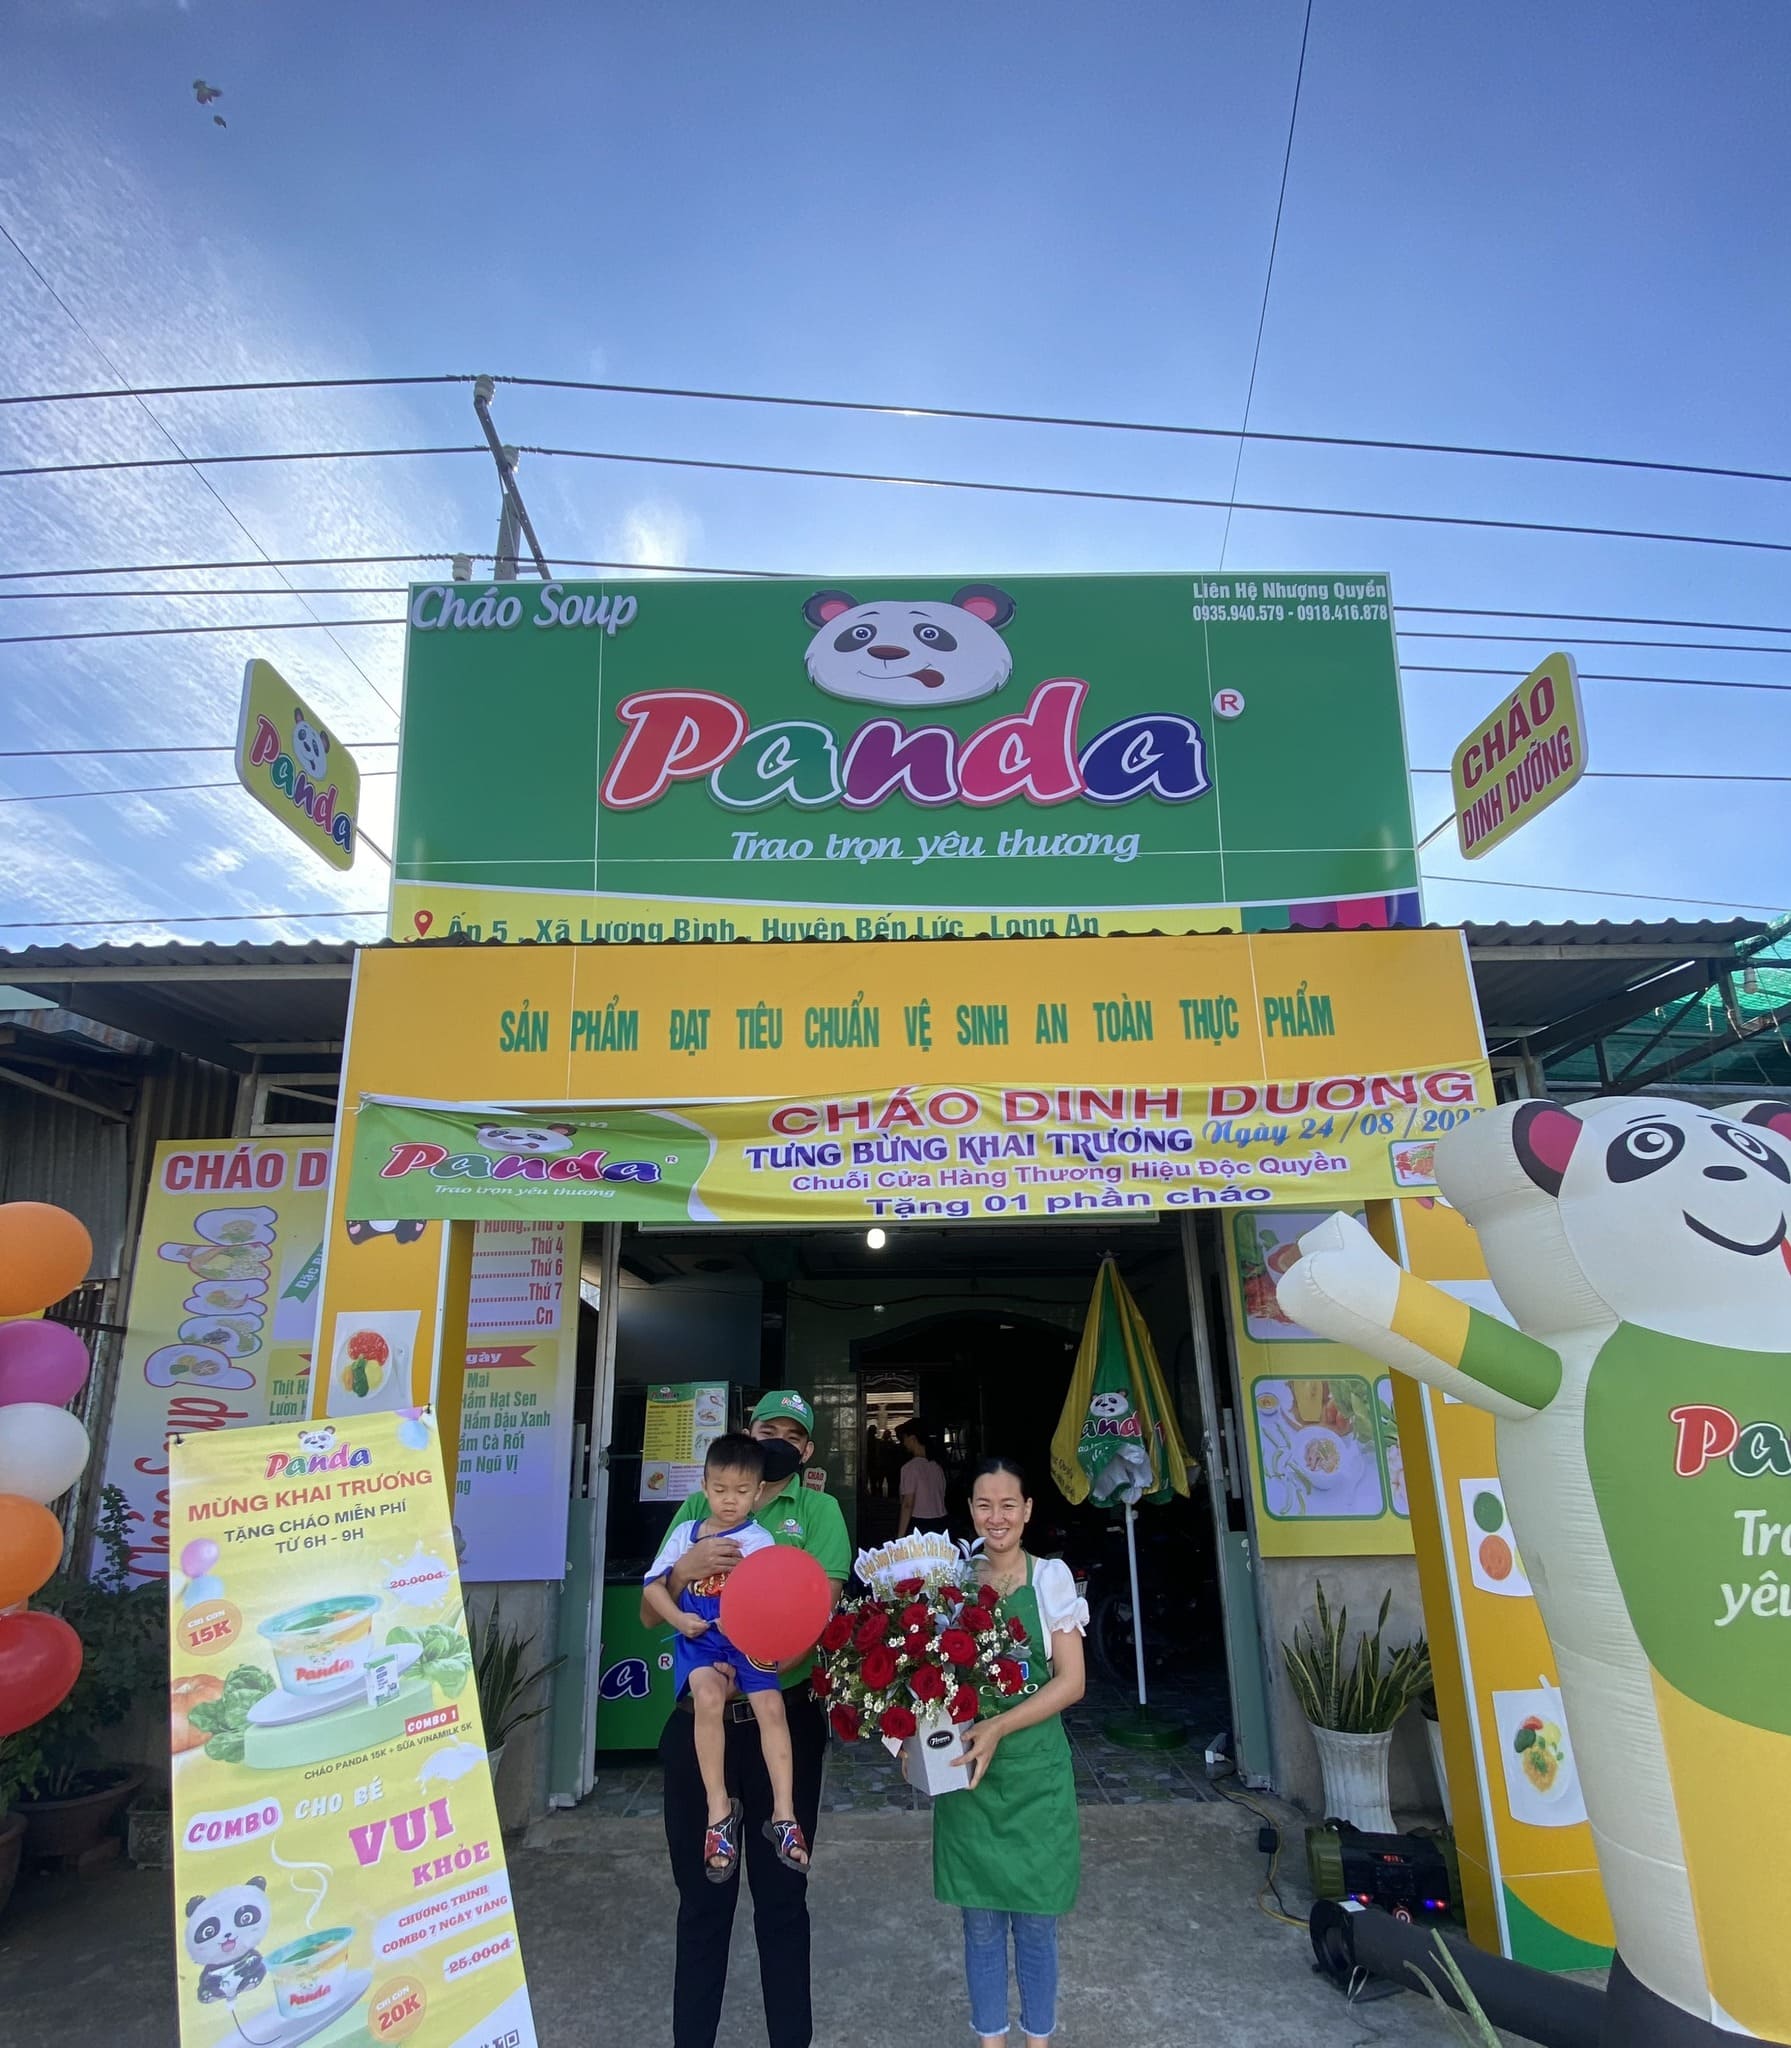 cửa hàng bán cháo dinh dưỡng nhà Panda tại Nha Trang